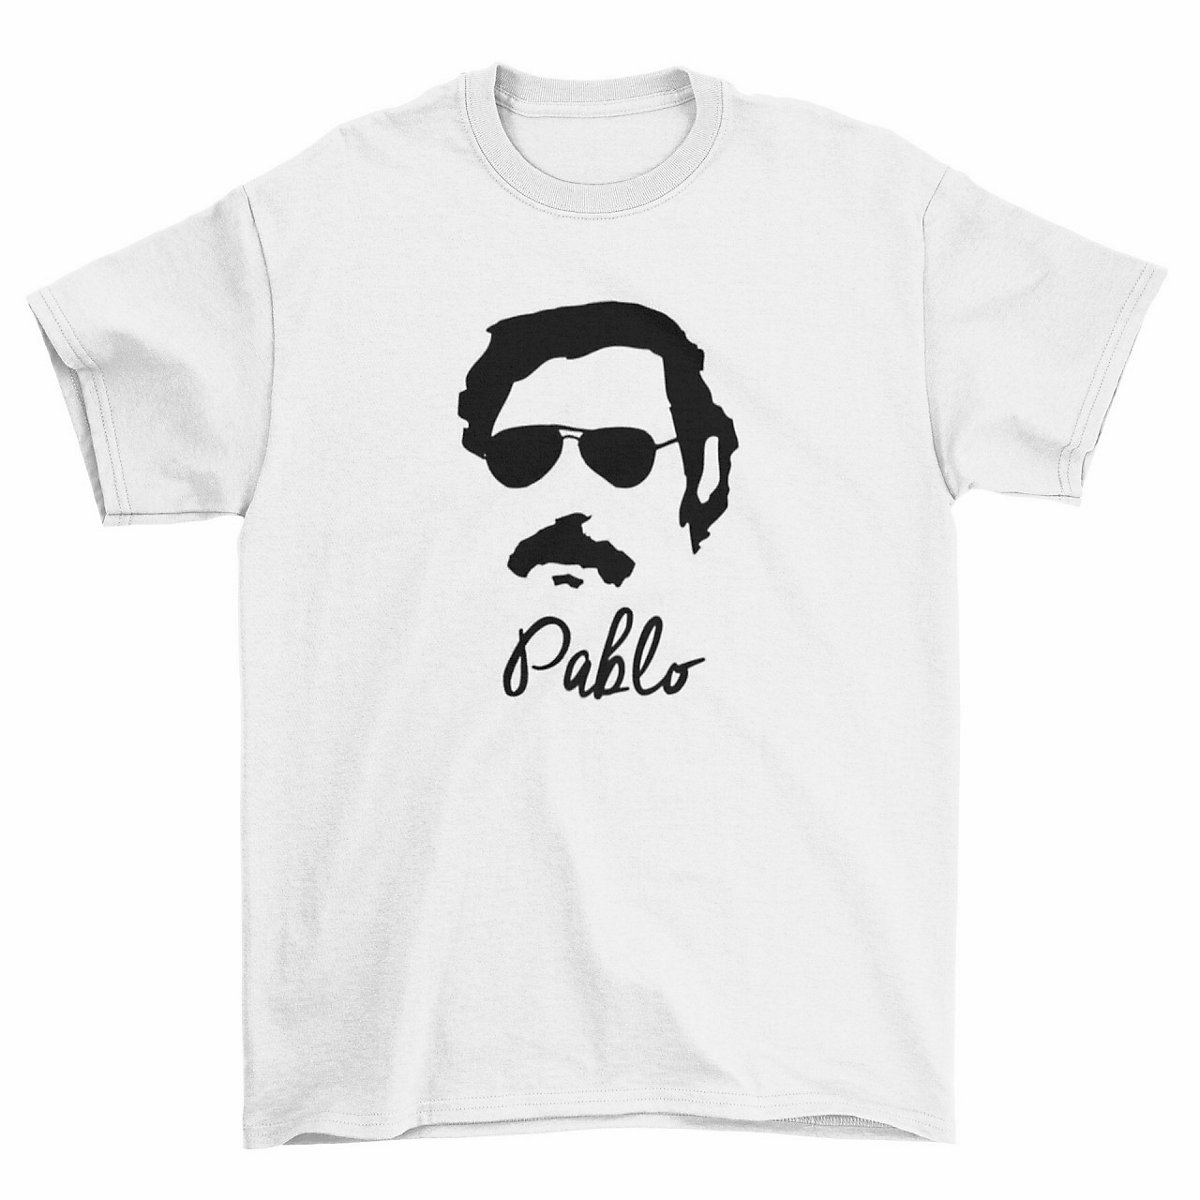 mamino Herren T Shirt -Pablo T-Shirts weiß